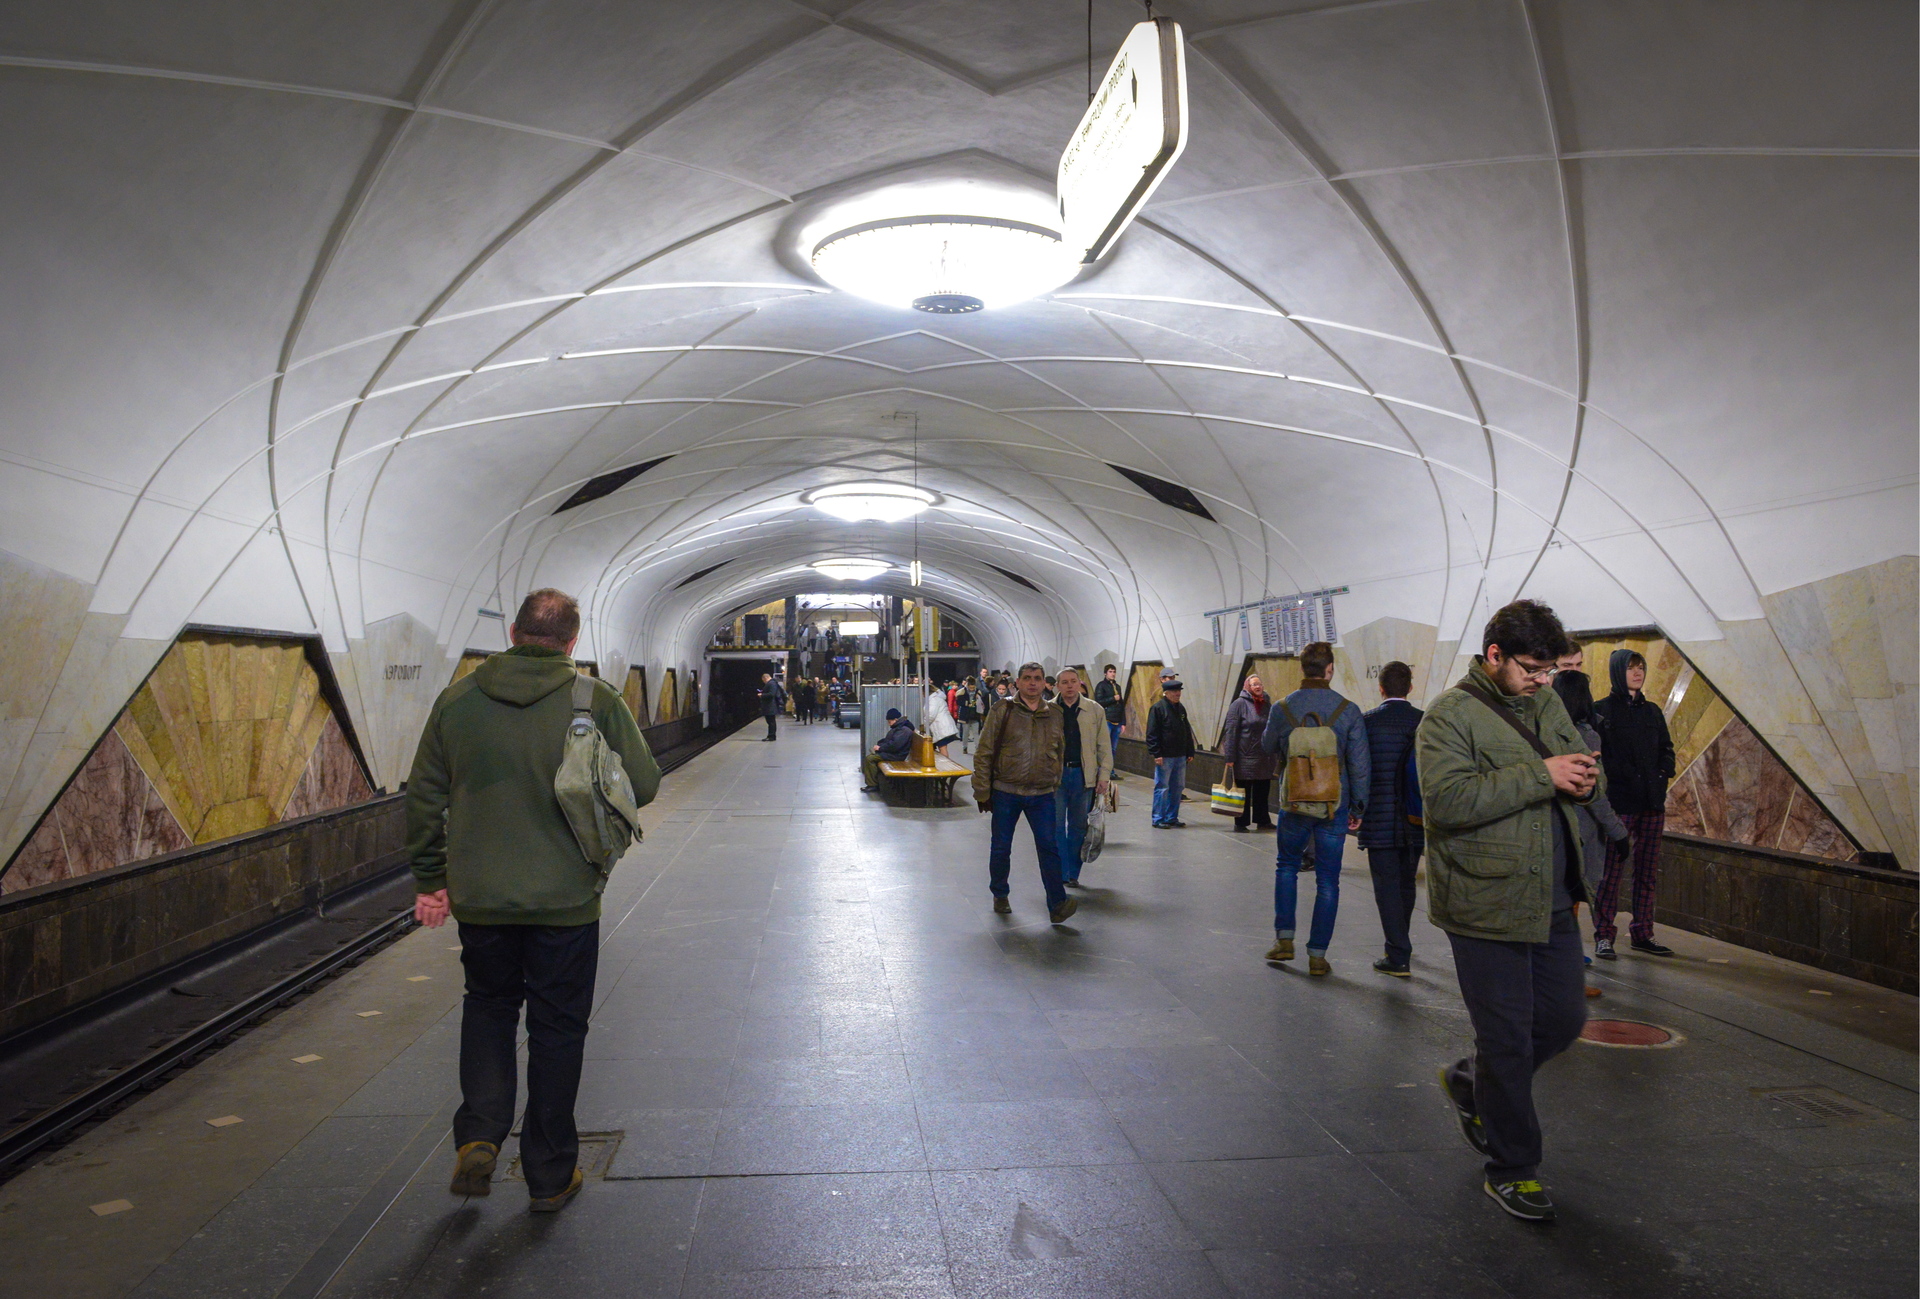 Москвичка в соцсетях объявила о поиске потерявшего в метро кошелек с 360 евро человека